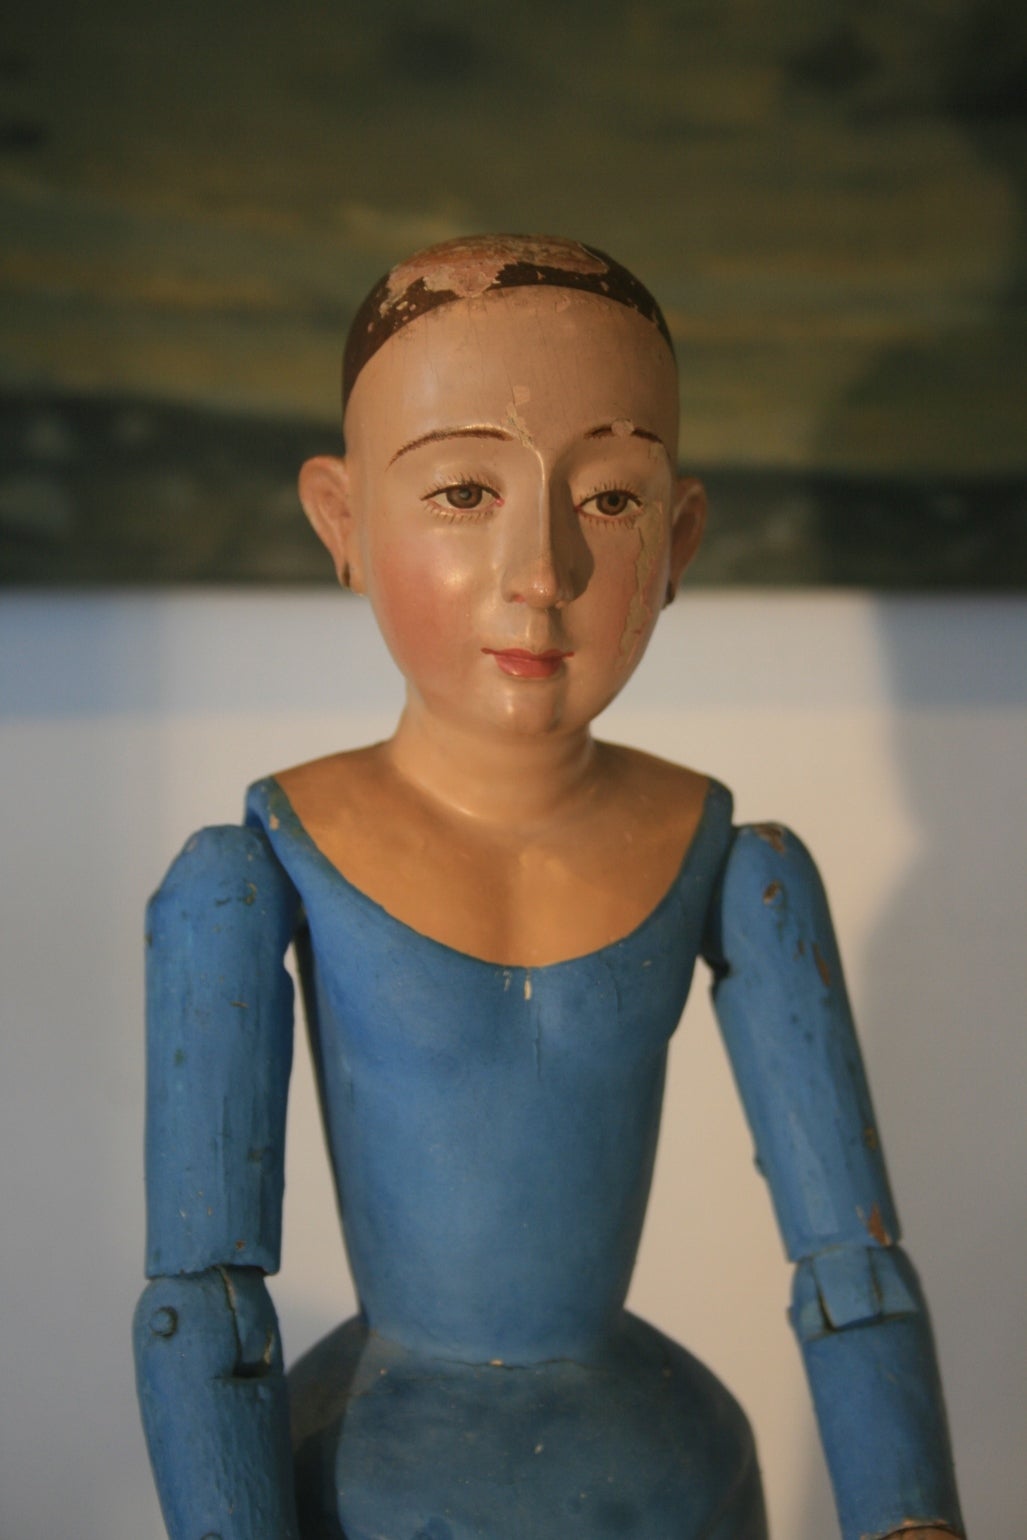 Magnifique figurine de poupée Coloni Santos du Mexique, datant du 18e siècle et de style colonial espagnol.  Il s'agit probablement de Sainte Anne.  La cage a été enveloppée dans du tissu et peinte du bleu traditionnel, le visage a une expression